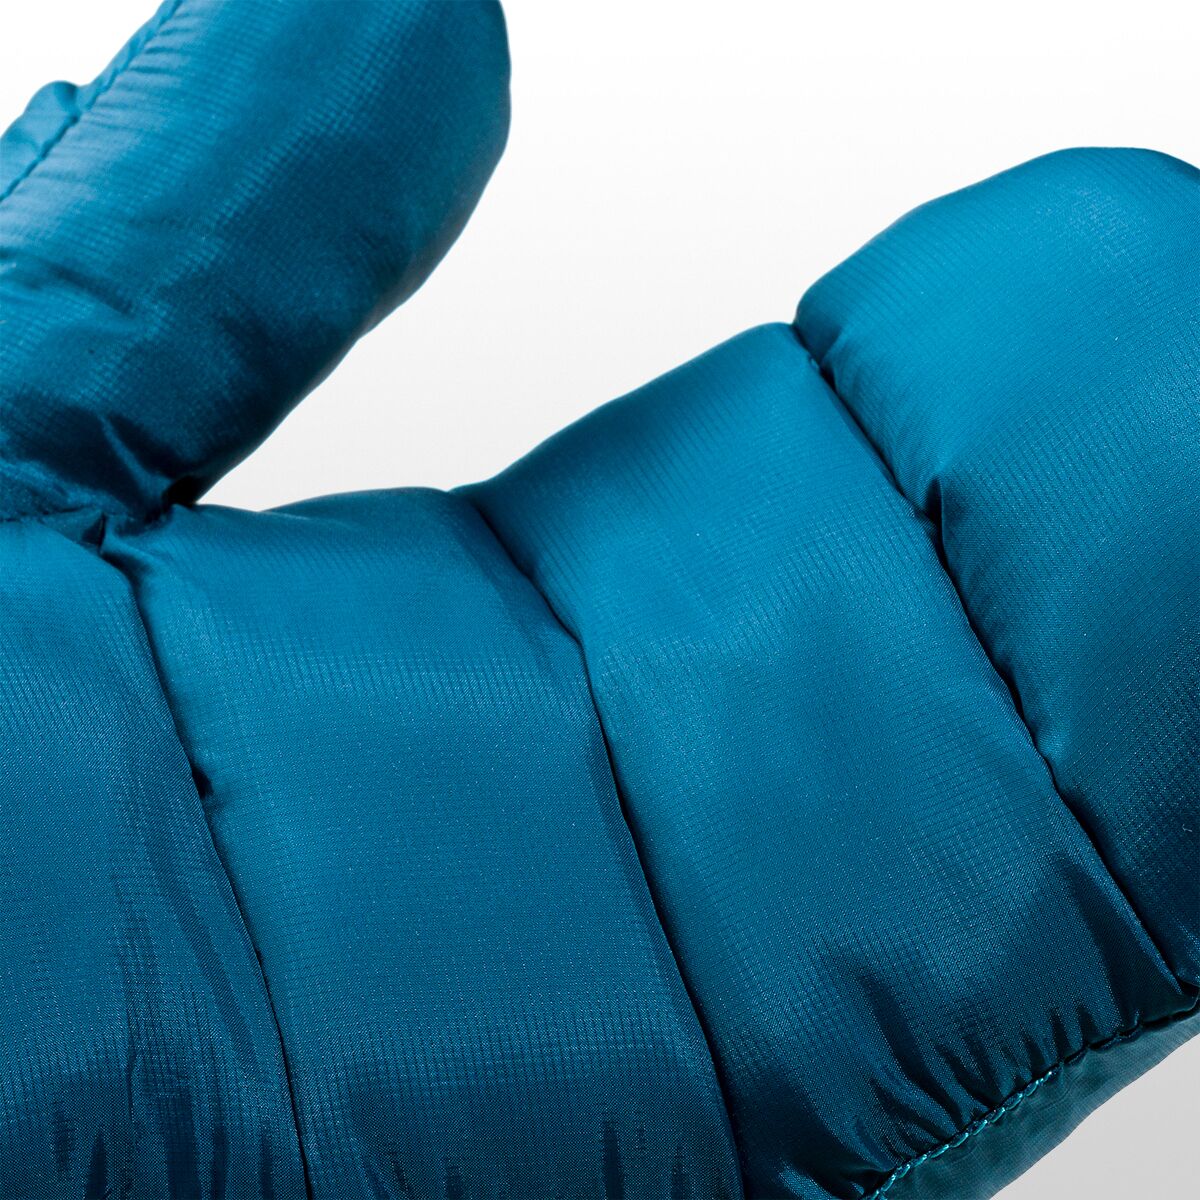 Stoic LulepSt. Pull Over Mitt - Gloves, Buy online